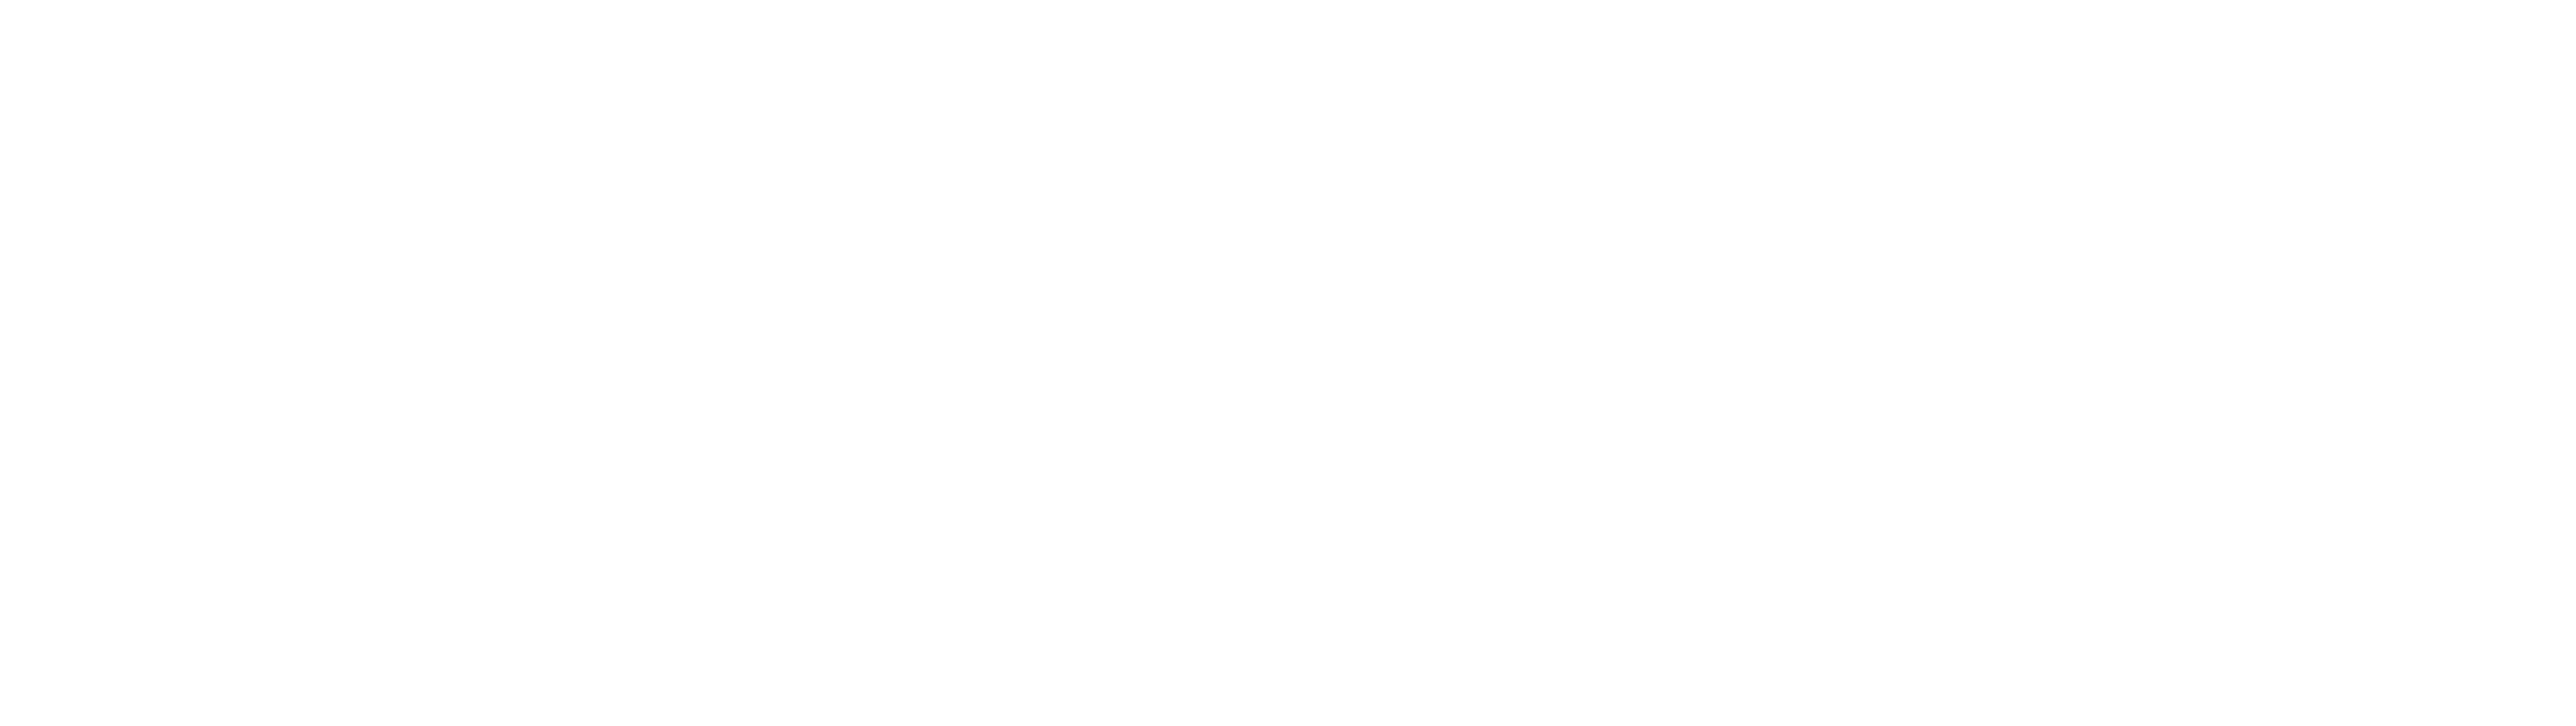 Clevenergy